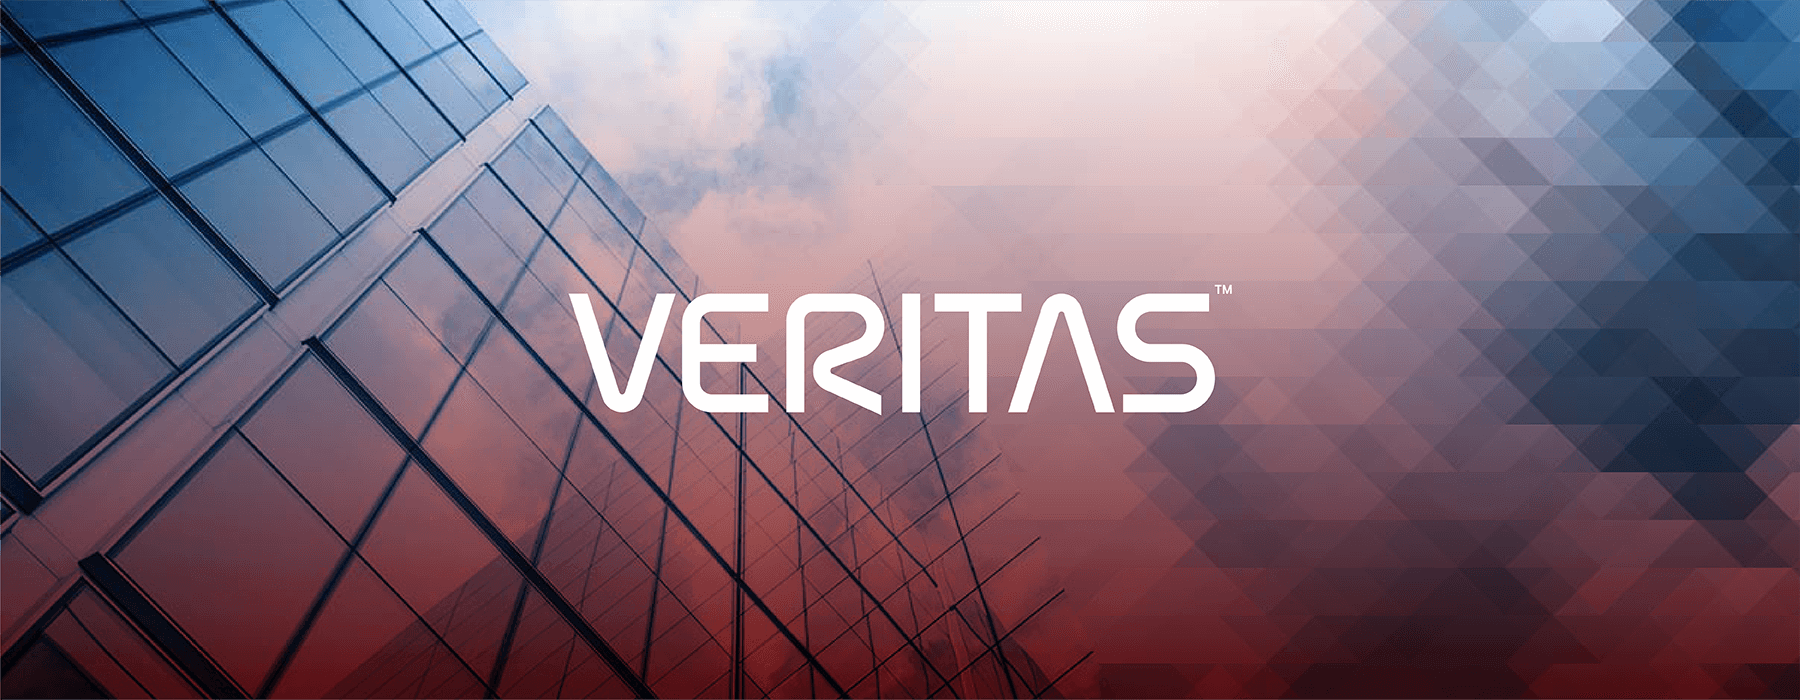 Ashkan Salehi - Veritas website and materials design